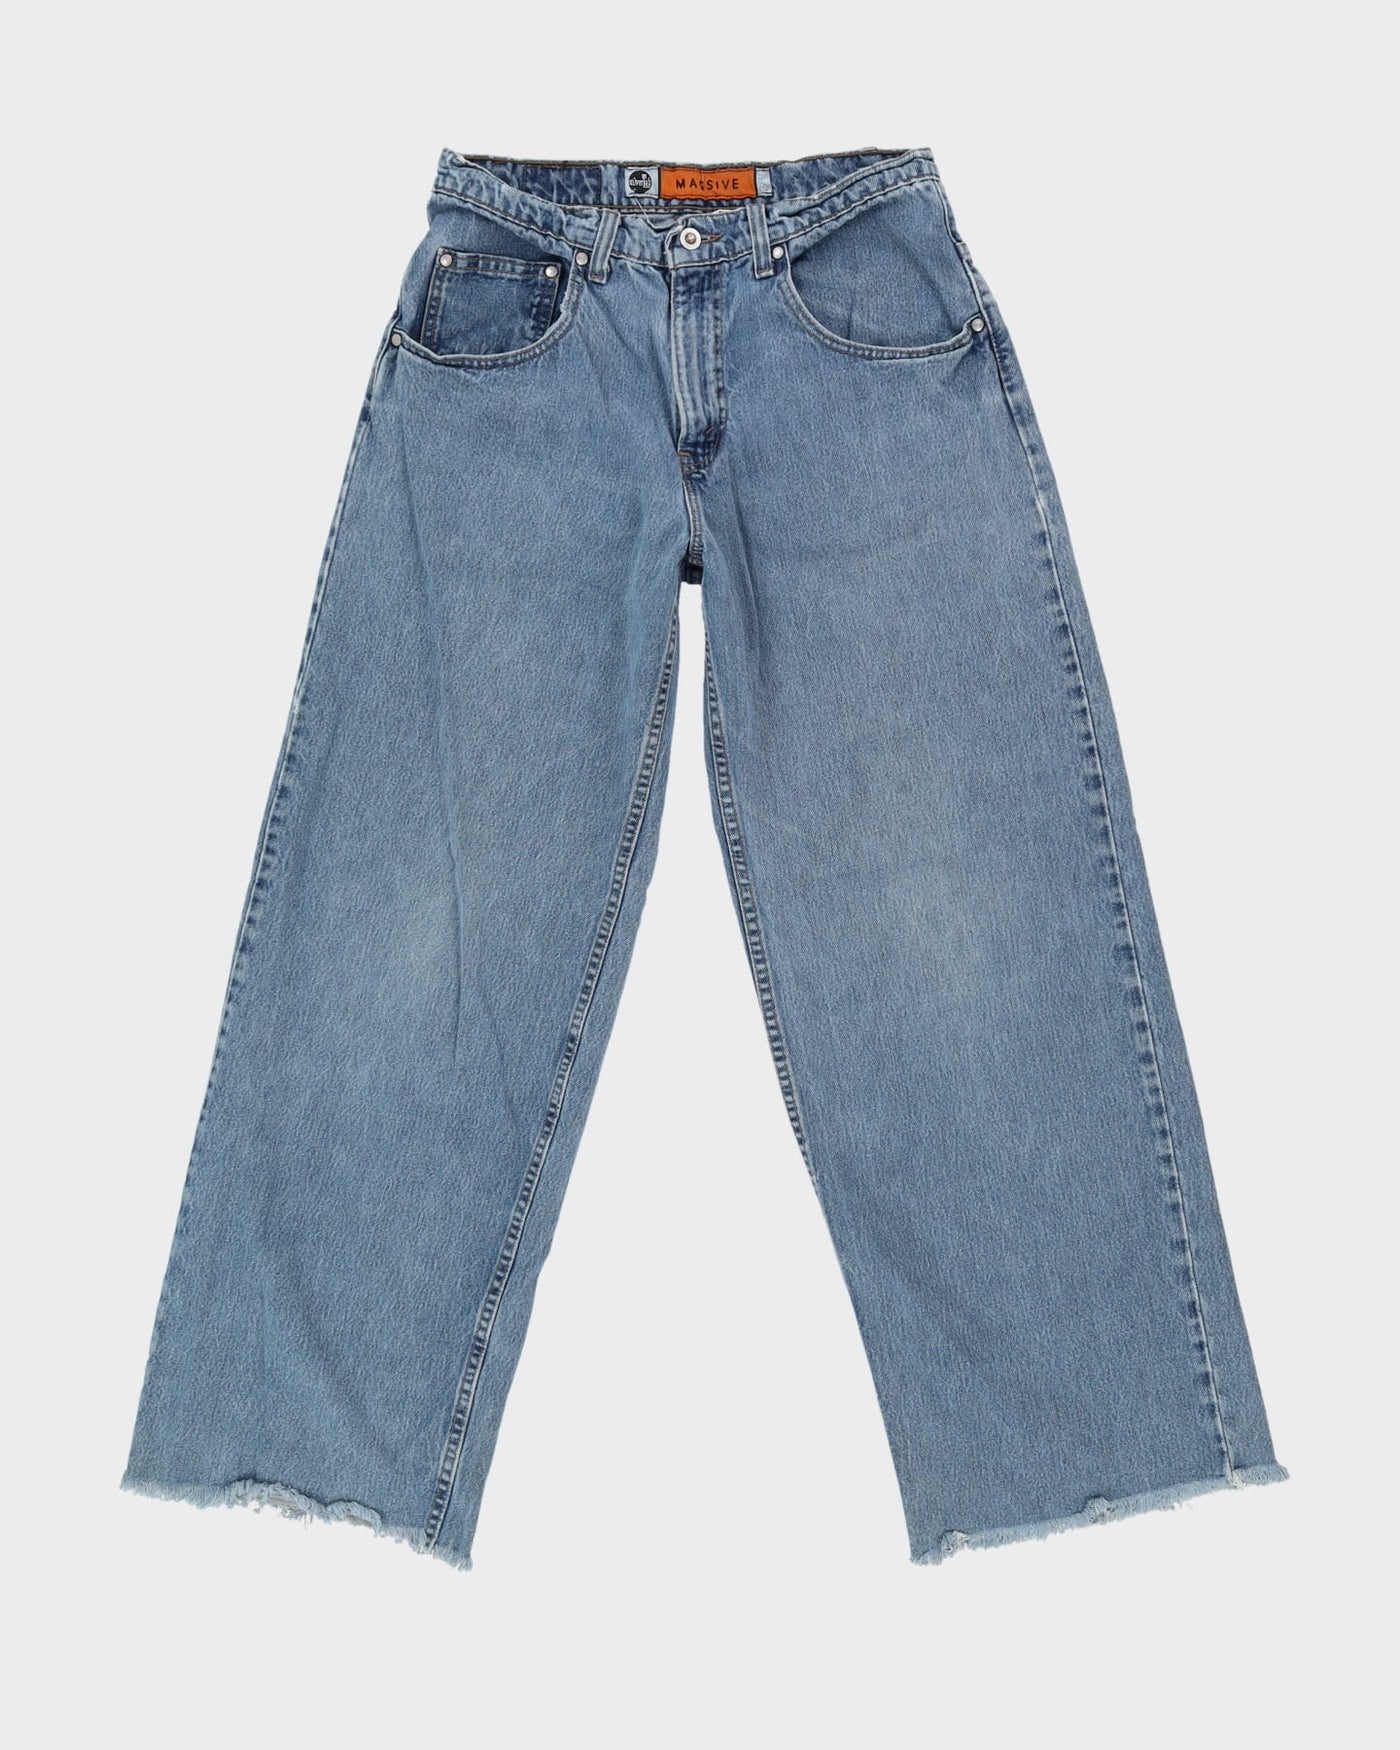 Levi's Silver Tab Massive Fit Blue Jeans - W31 L32 – Rokit